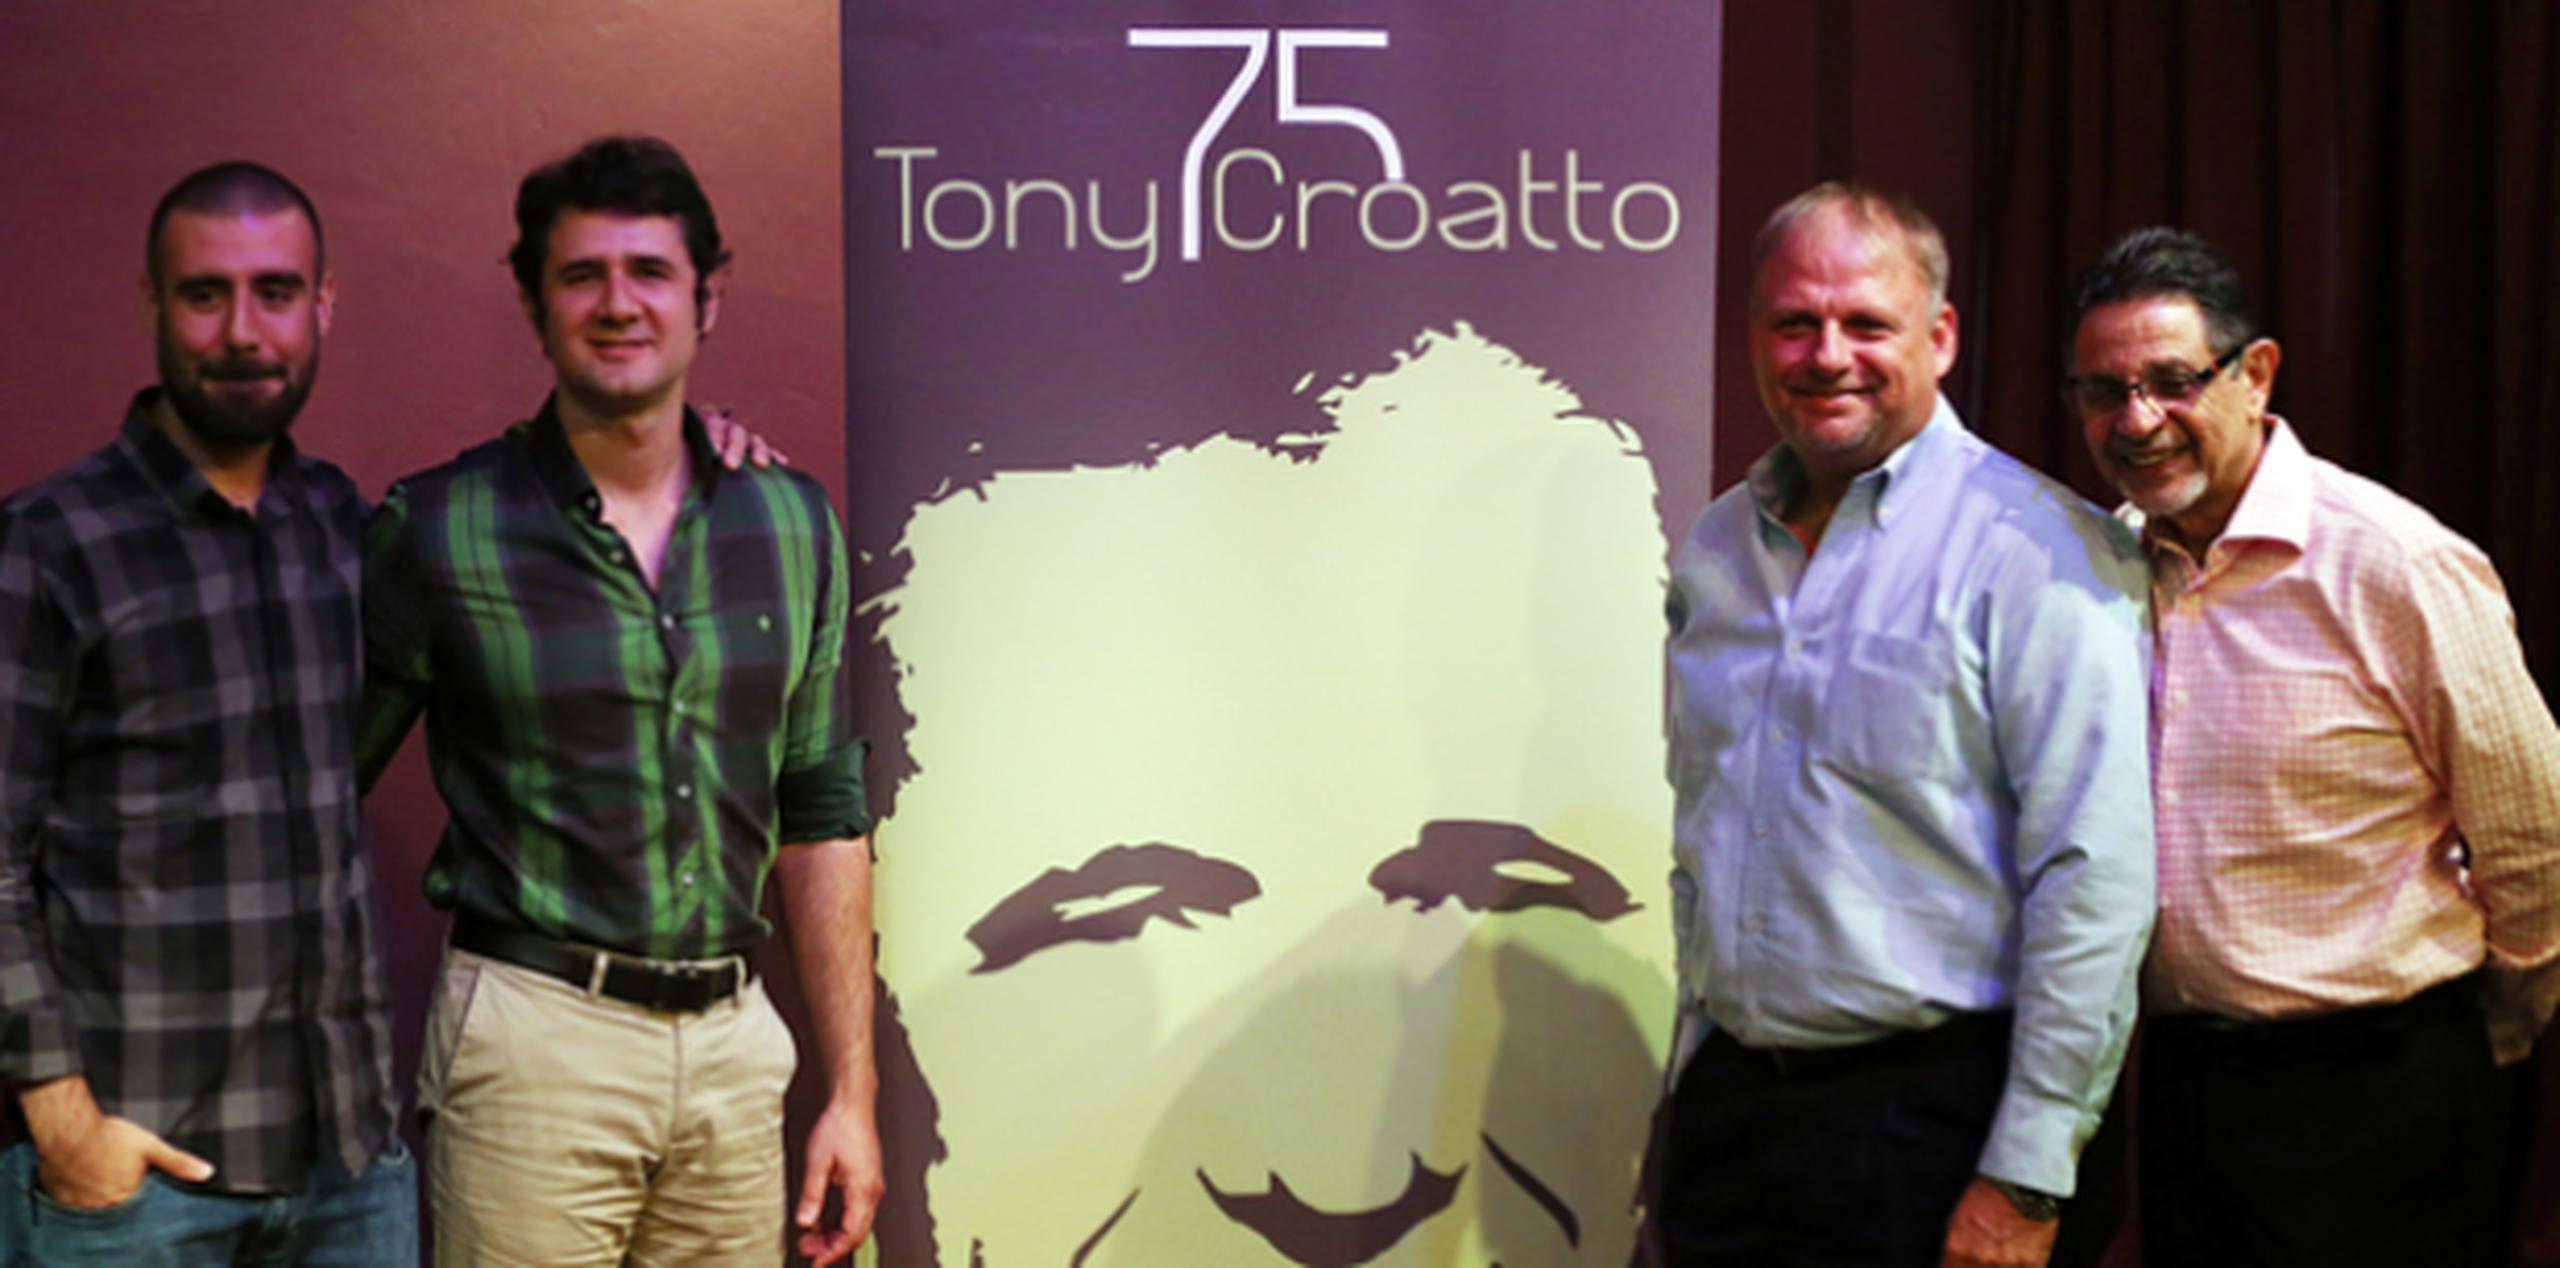 Ale, Hermes y Alejandro Croatto, junto a Silverio Pérez, durante la presentación del concierto en conmemoración de Tony Croatto. (Archivo)